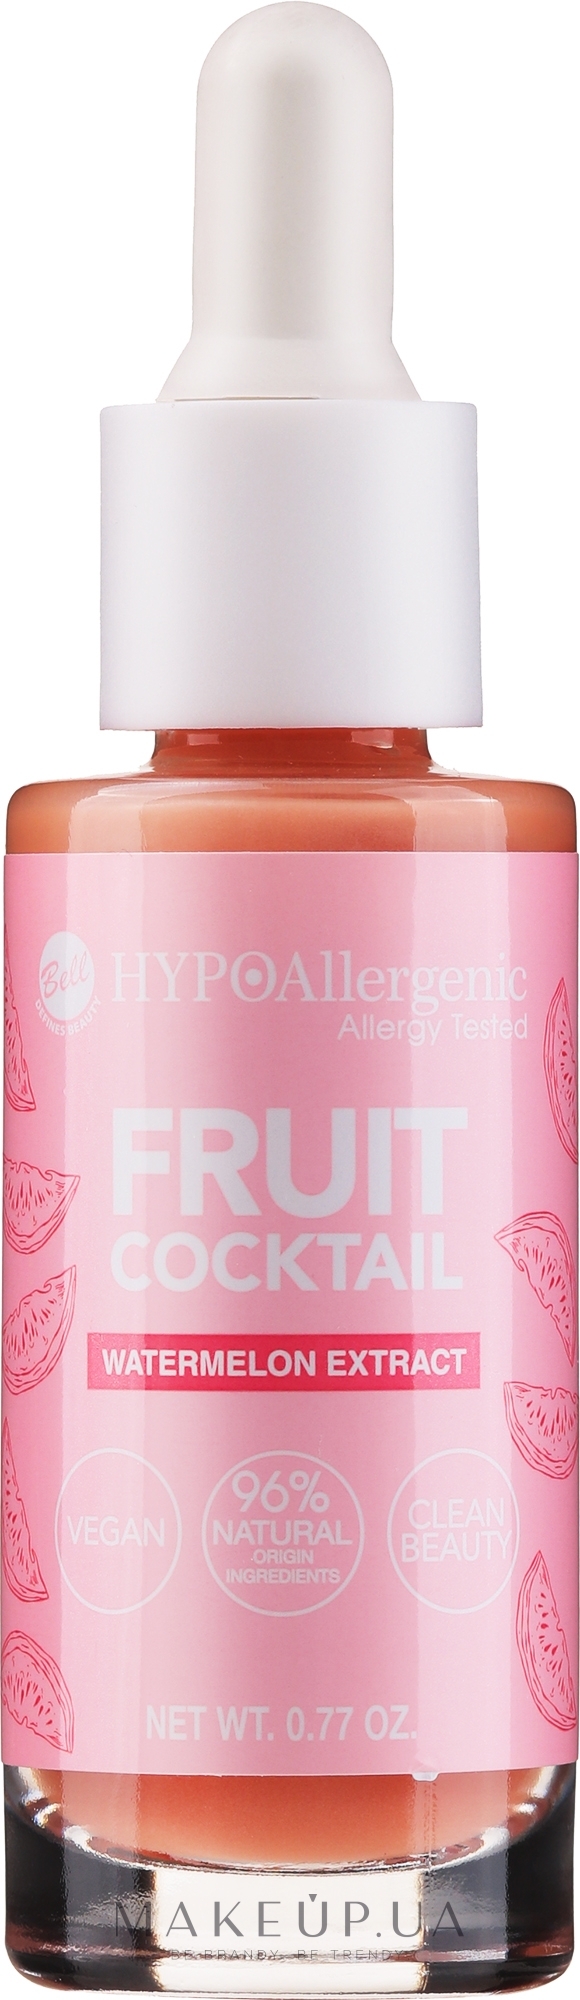 Гіпоалергенна основа під макіяж - Bell Hypoallergenic Fruit Cocktail — фото 22g